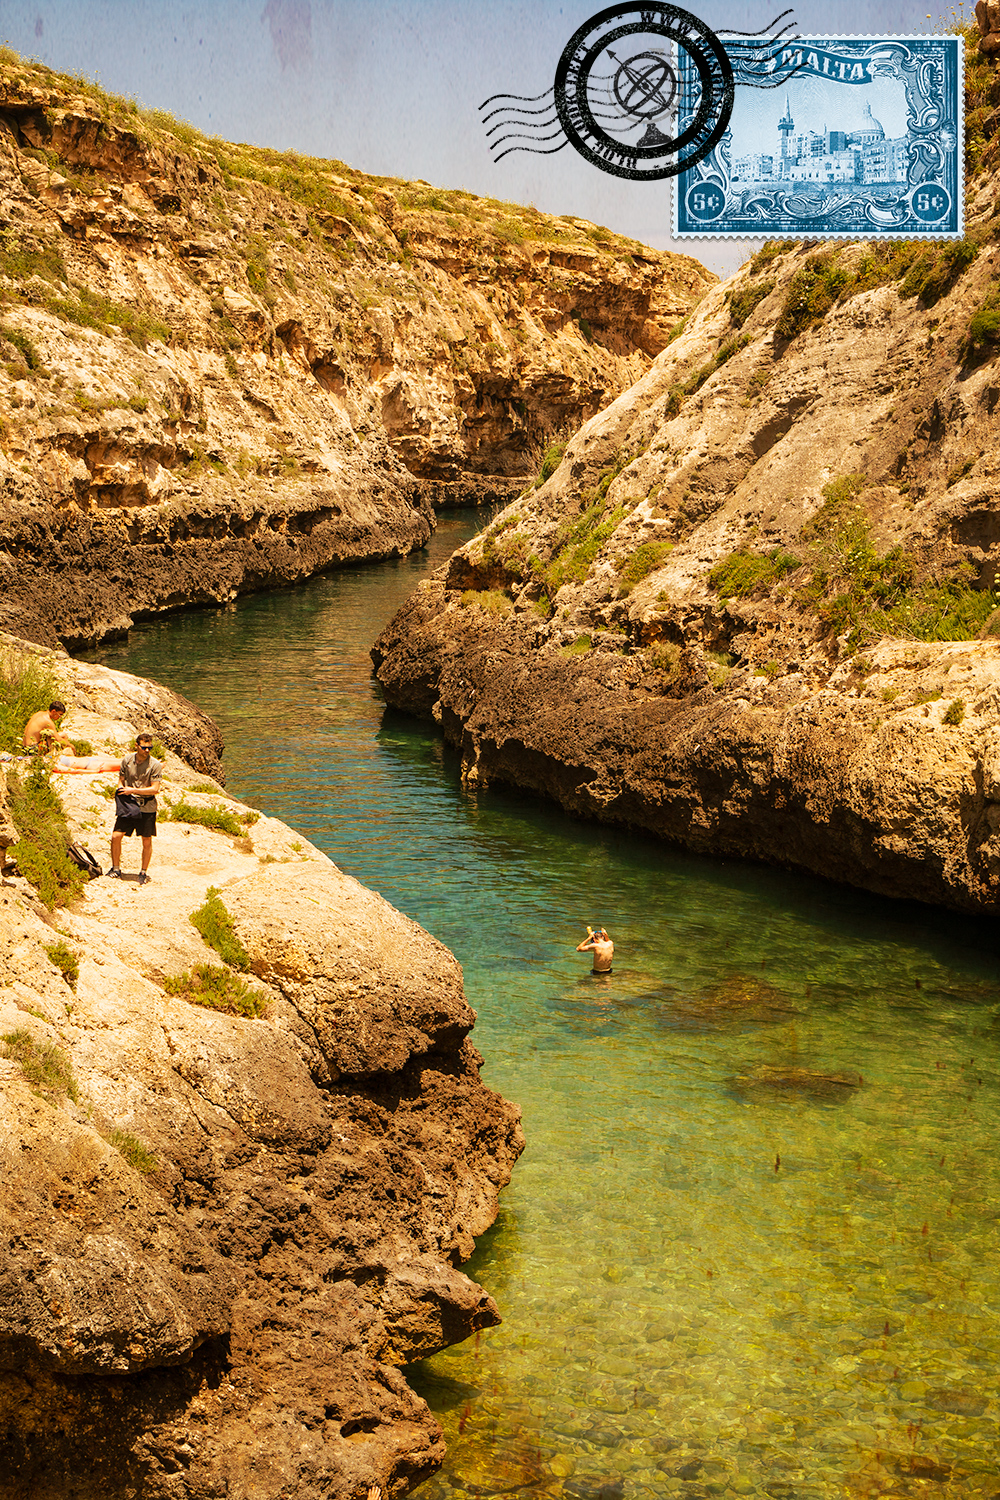 Wied il-Għasri Valley in Gozo